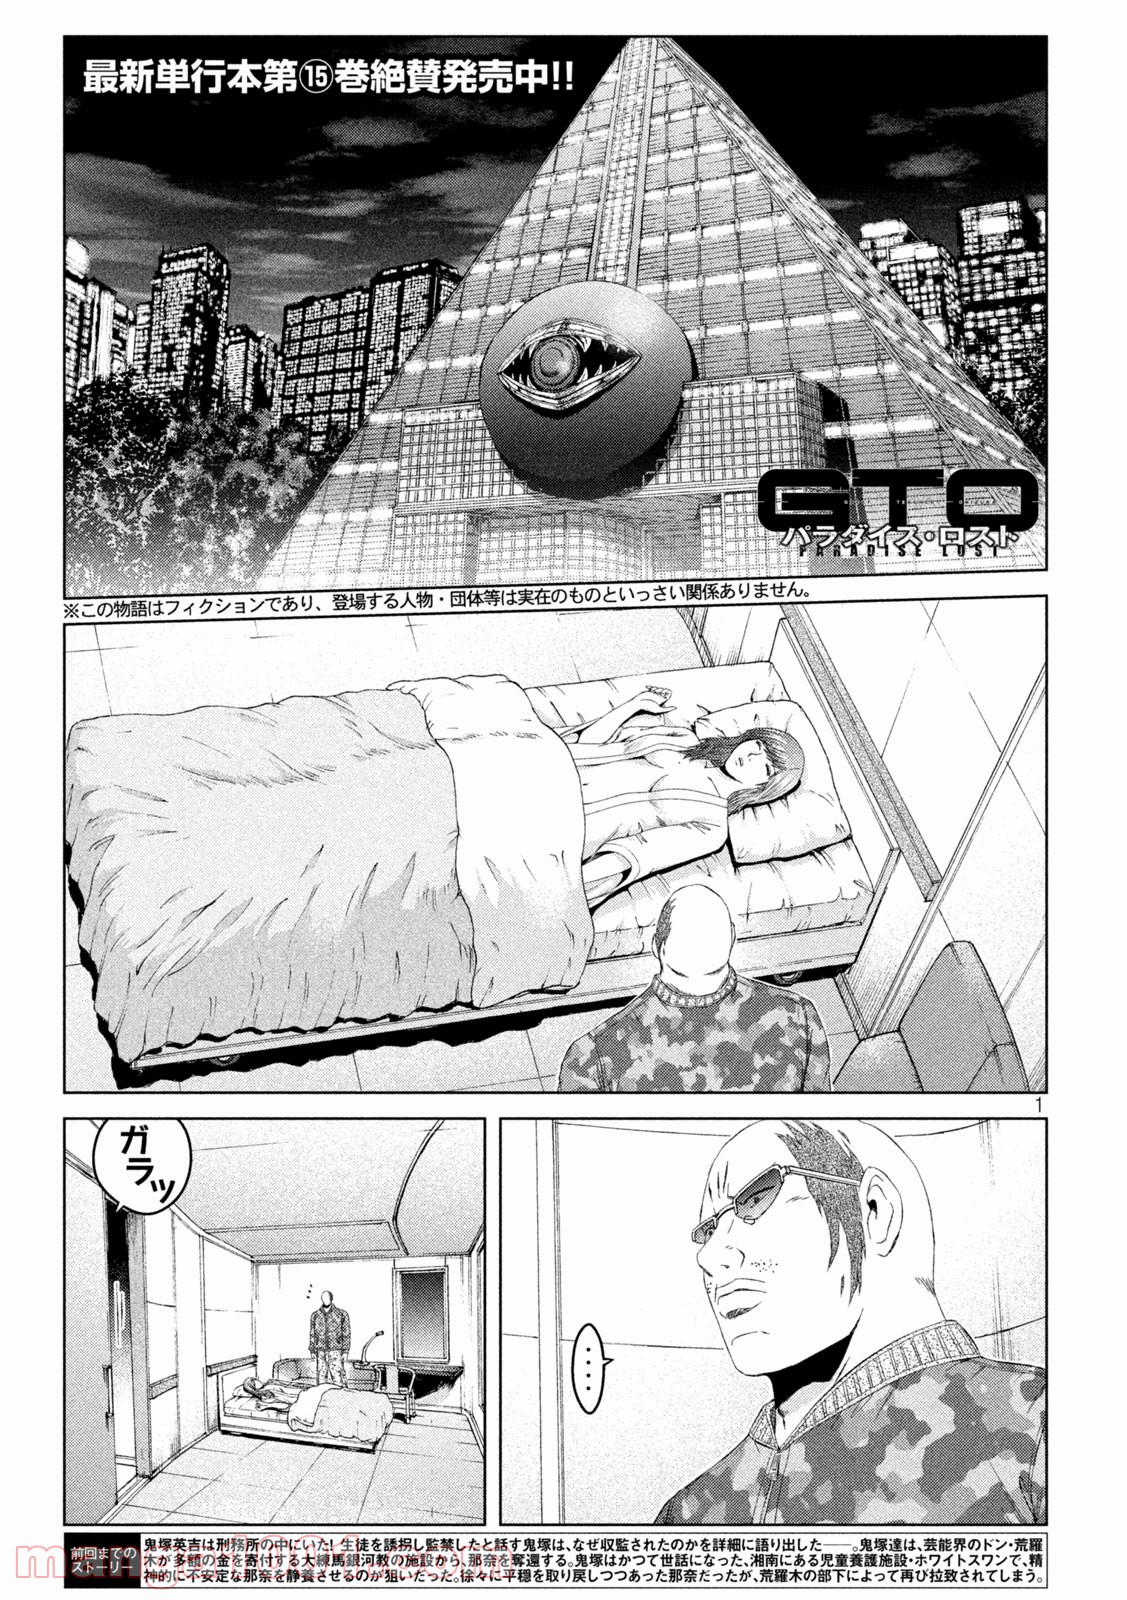 Gto パラダイス ロスト Raw 第143話 Manga Raw